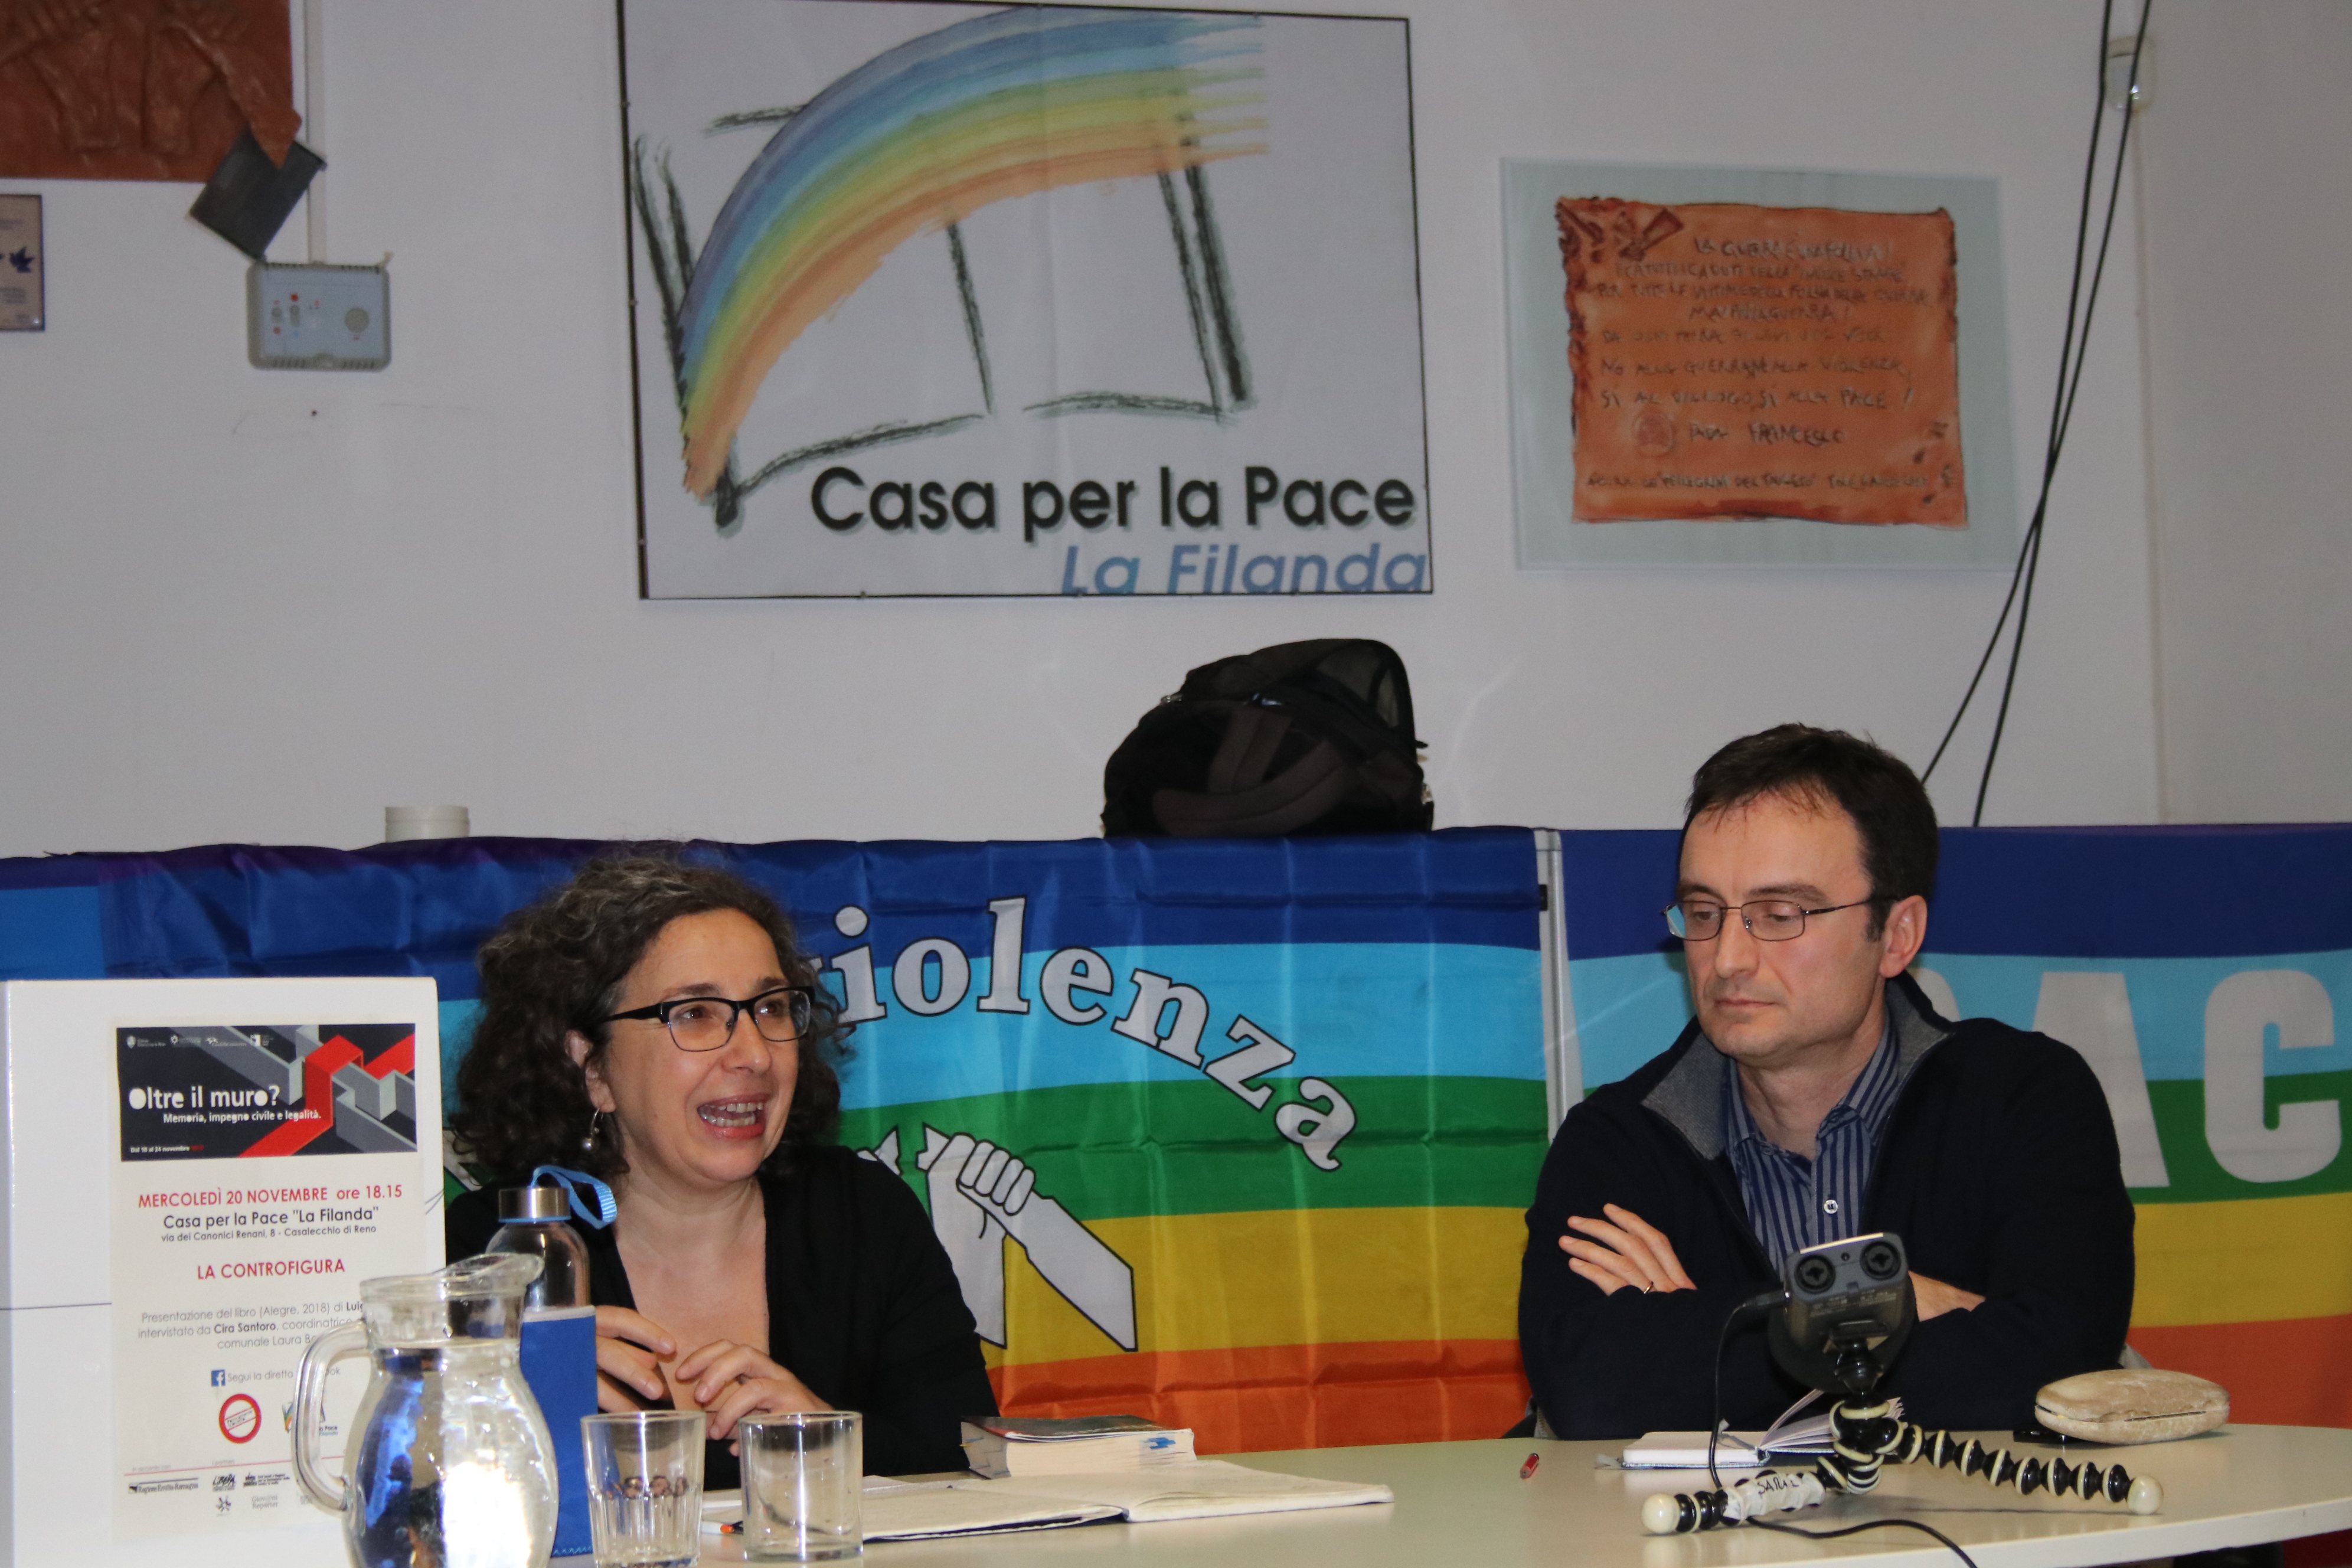 20 novembre - Luigi Lollini e Cira Santoro in Casa per la Pace